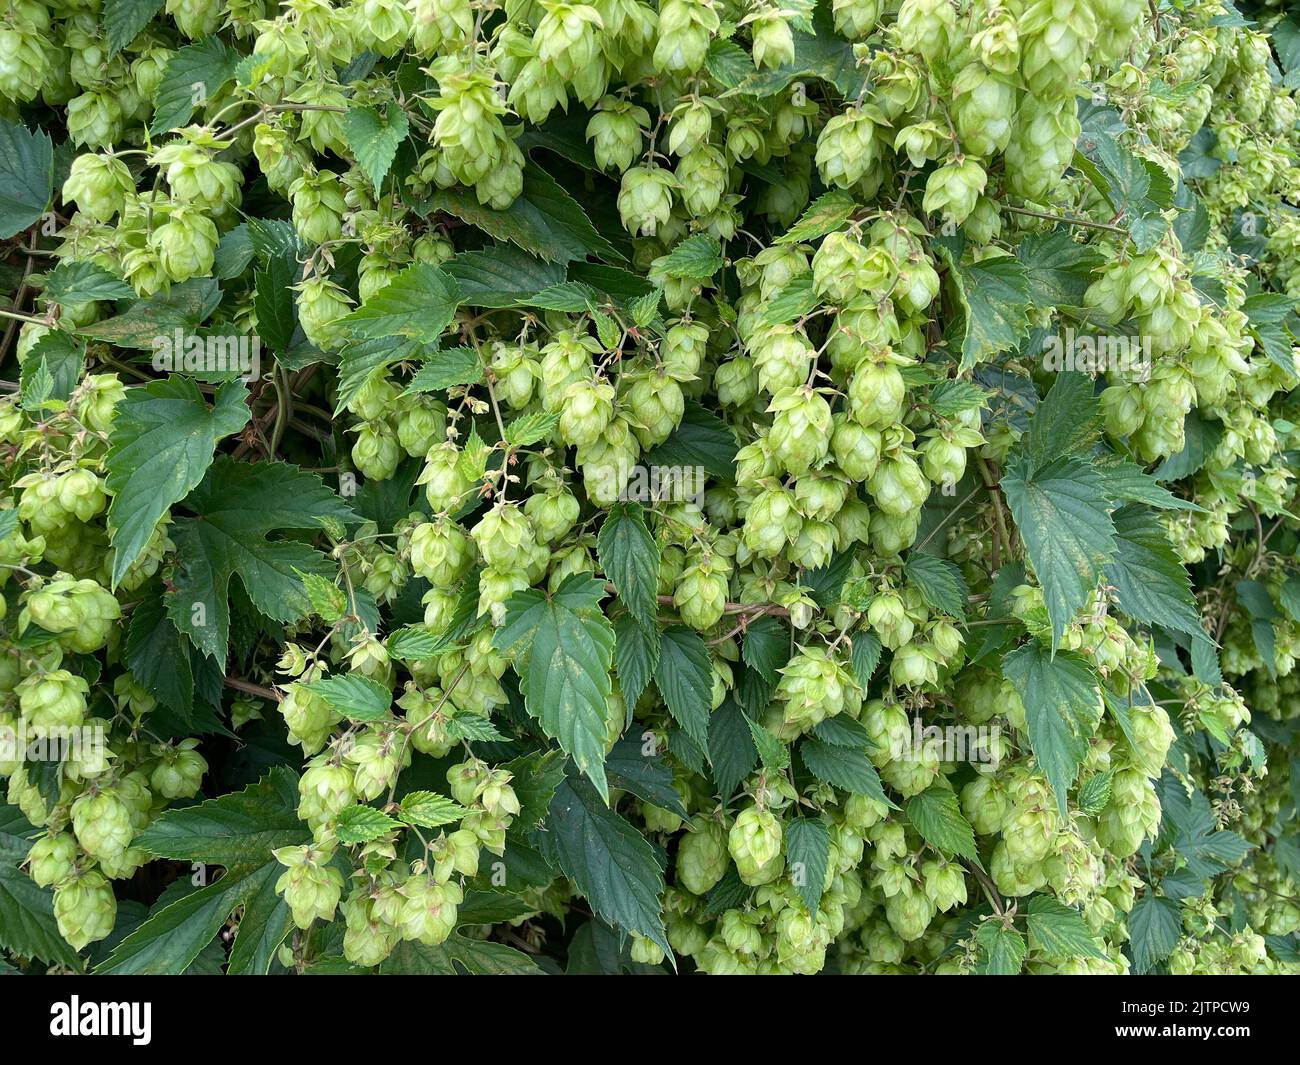 ESPERA que el fruto 0r cono de semilla de la Planta Hop Humulus lupulus. Phot6o: Tony Gale Foto de stock